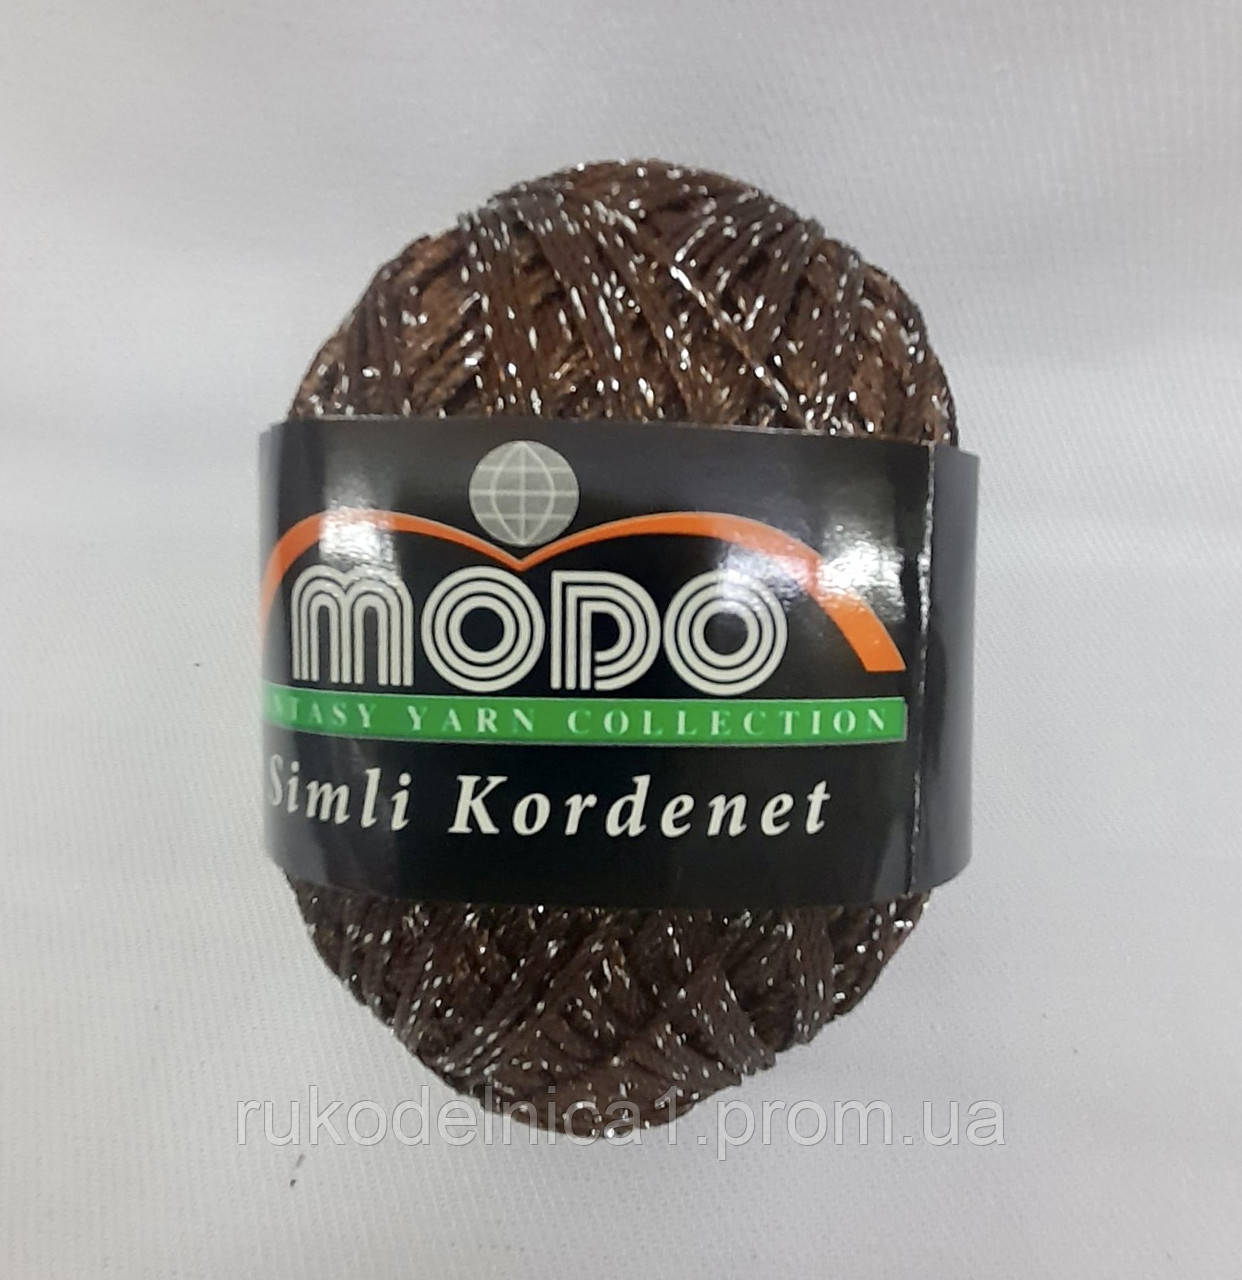 Пряжа з люрексом Modo Simli Kordenet (1034 Коричневий)для вечерніх суконь,літнього одягу, купальників, поделок